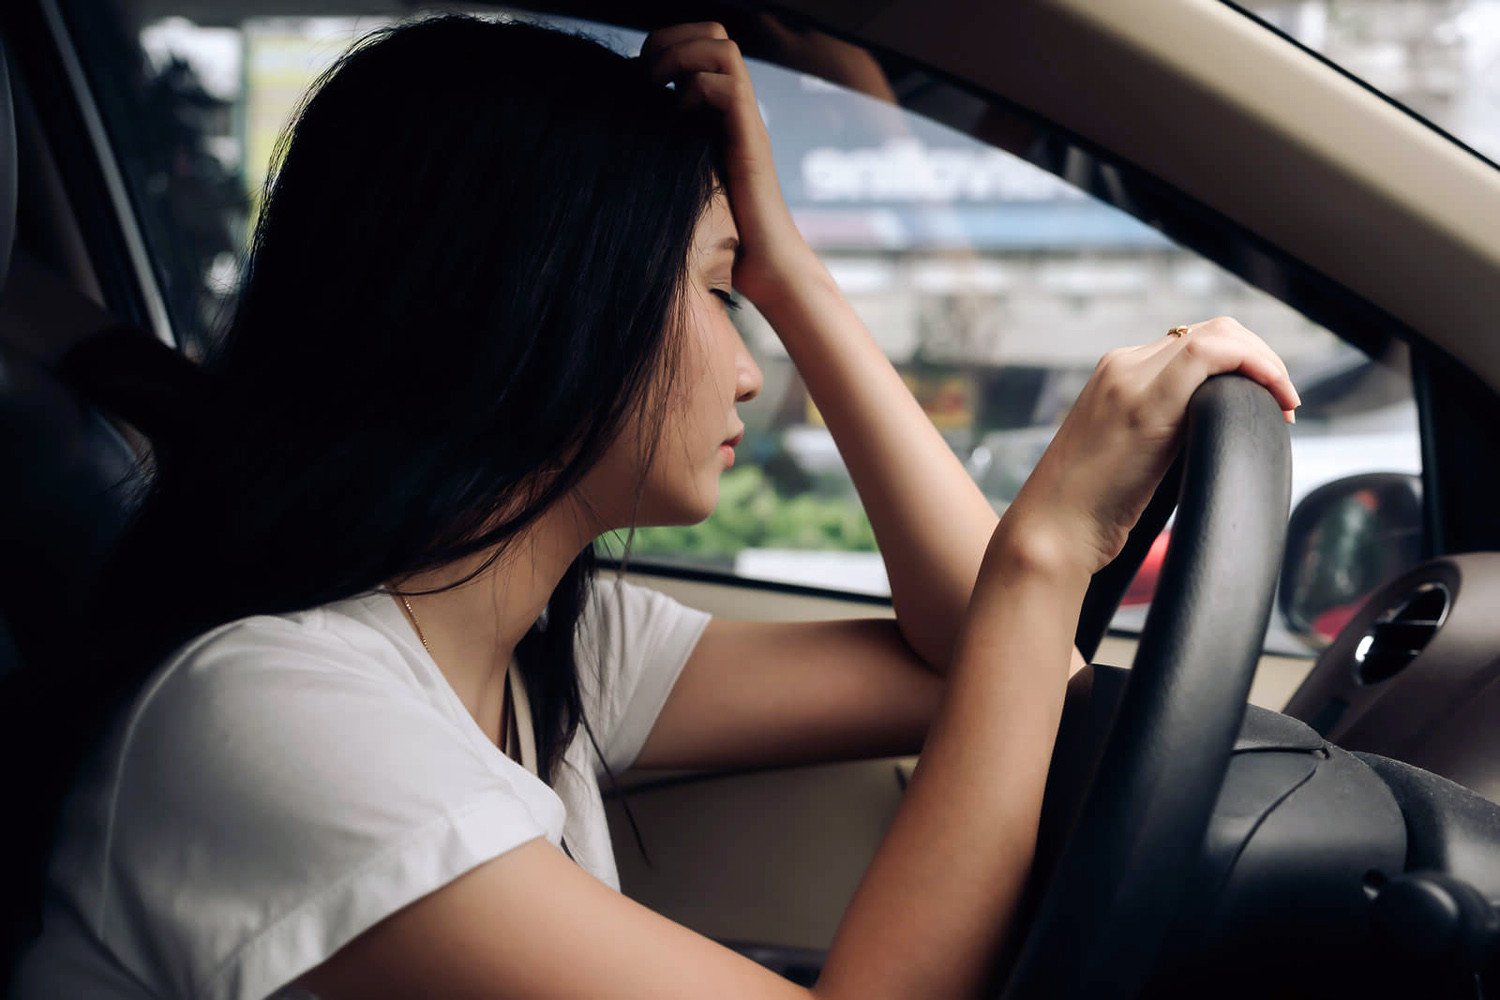 Nồng độ cồn ảnh hưởng như nào tới kỹ năng lái xe? - Ảnh 1.